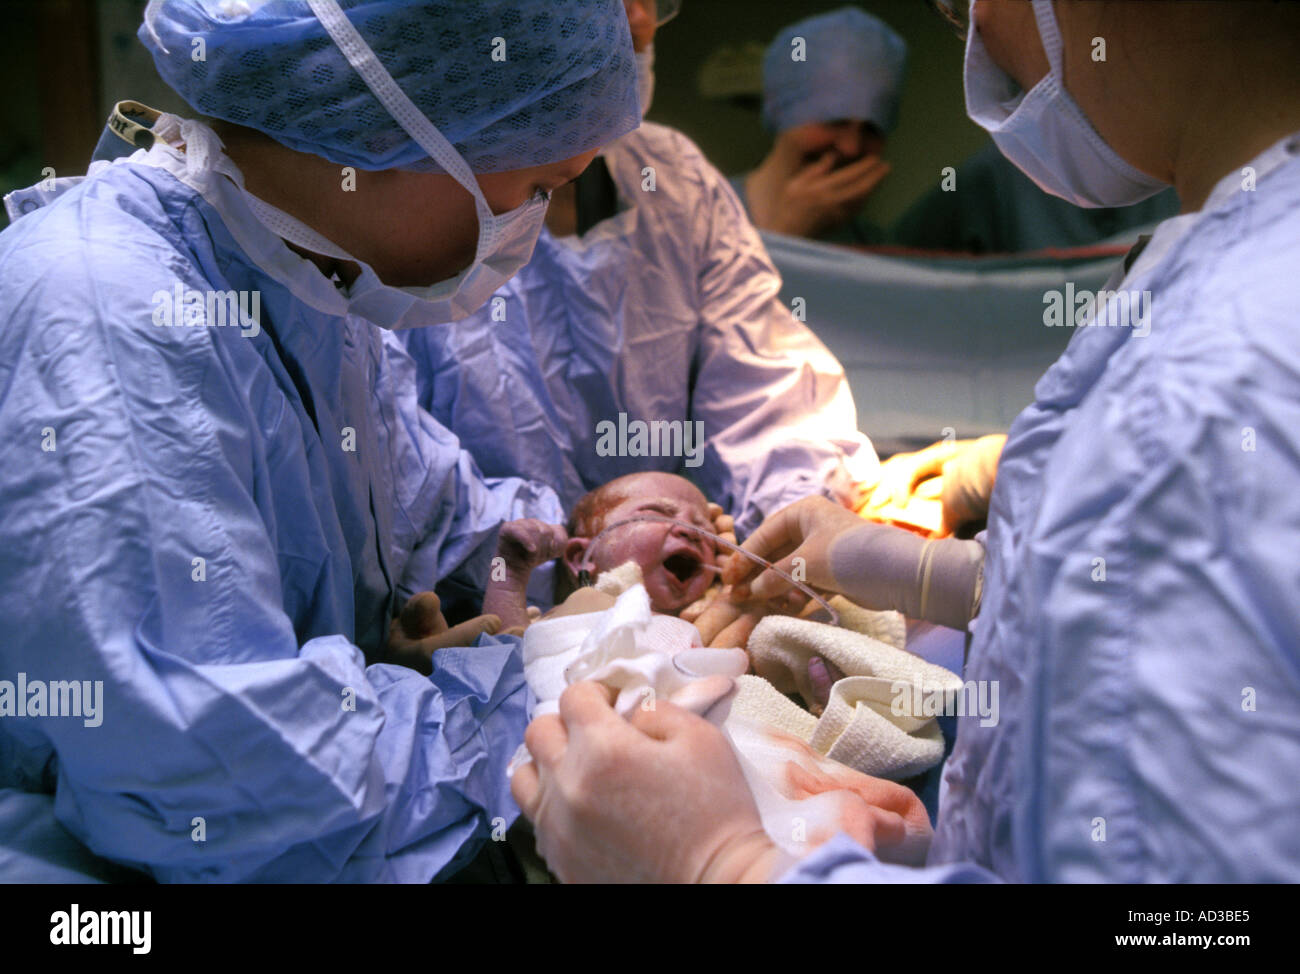 Neonato venga aspirato dopo l'esecuzione del taglio cesareo. Foto Stock